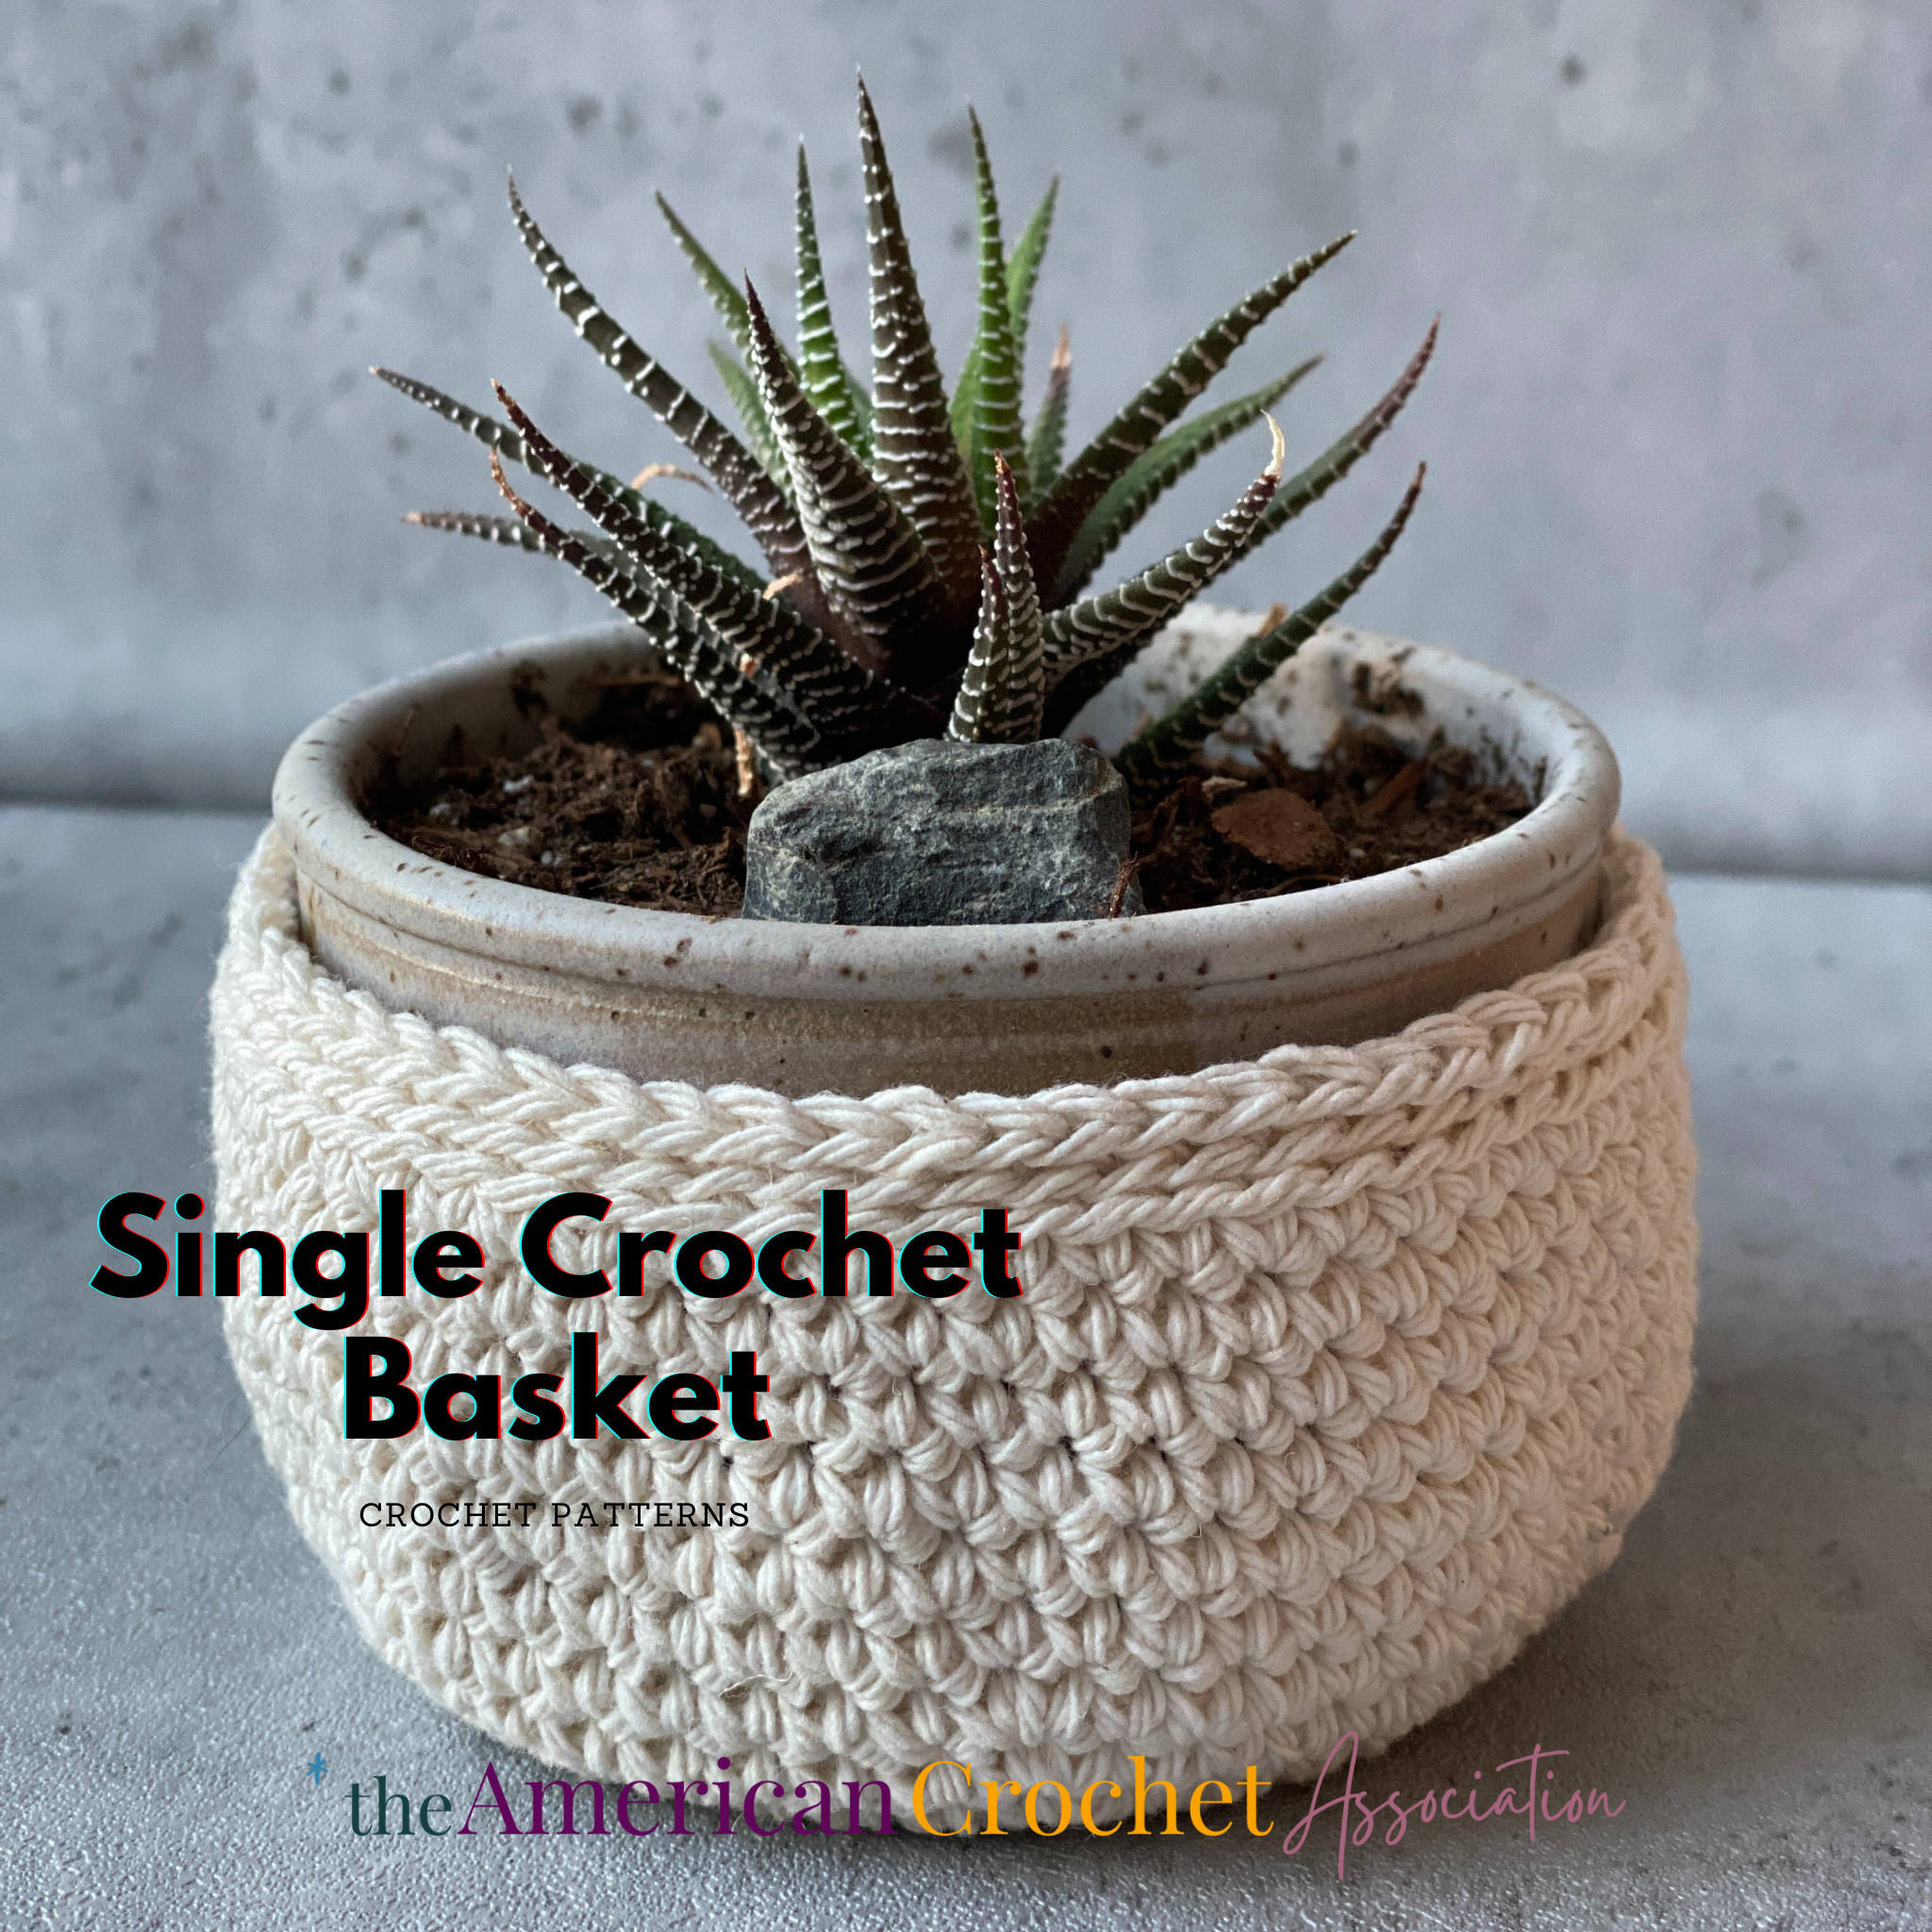 Single Crochet Basket Pattern - American Crochet Association